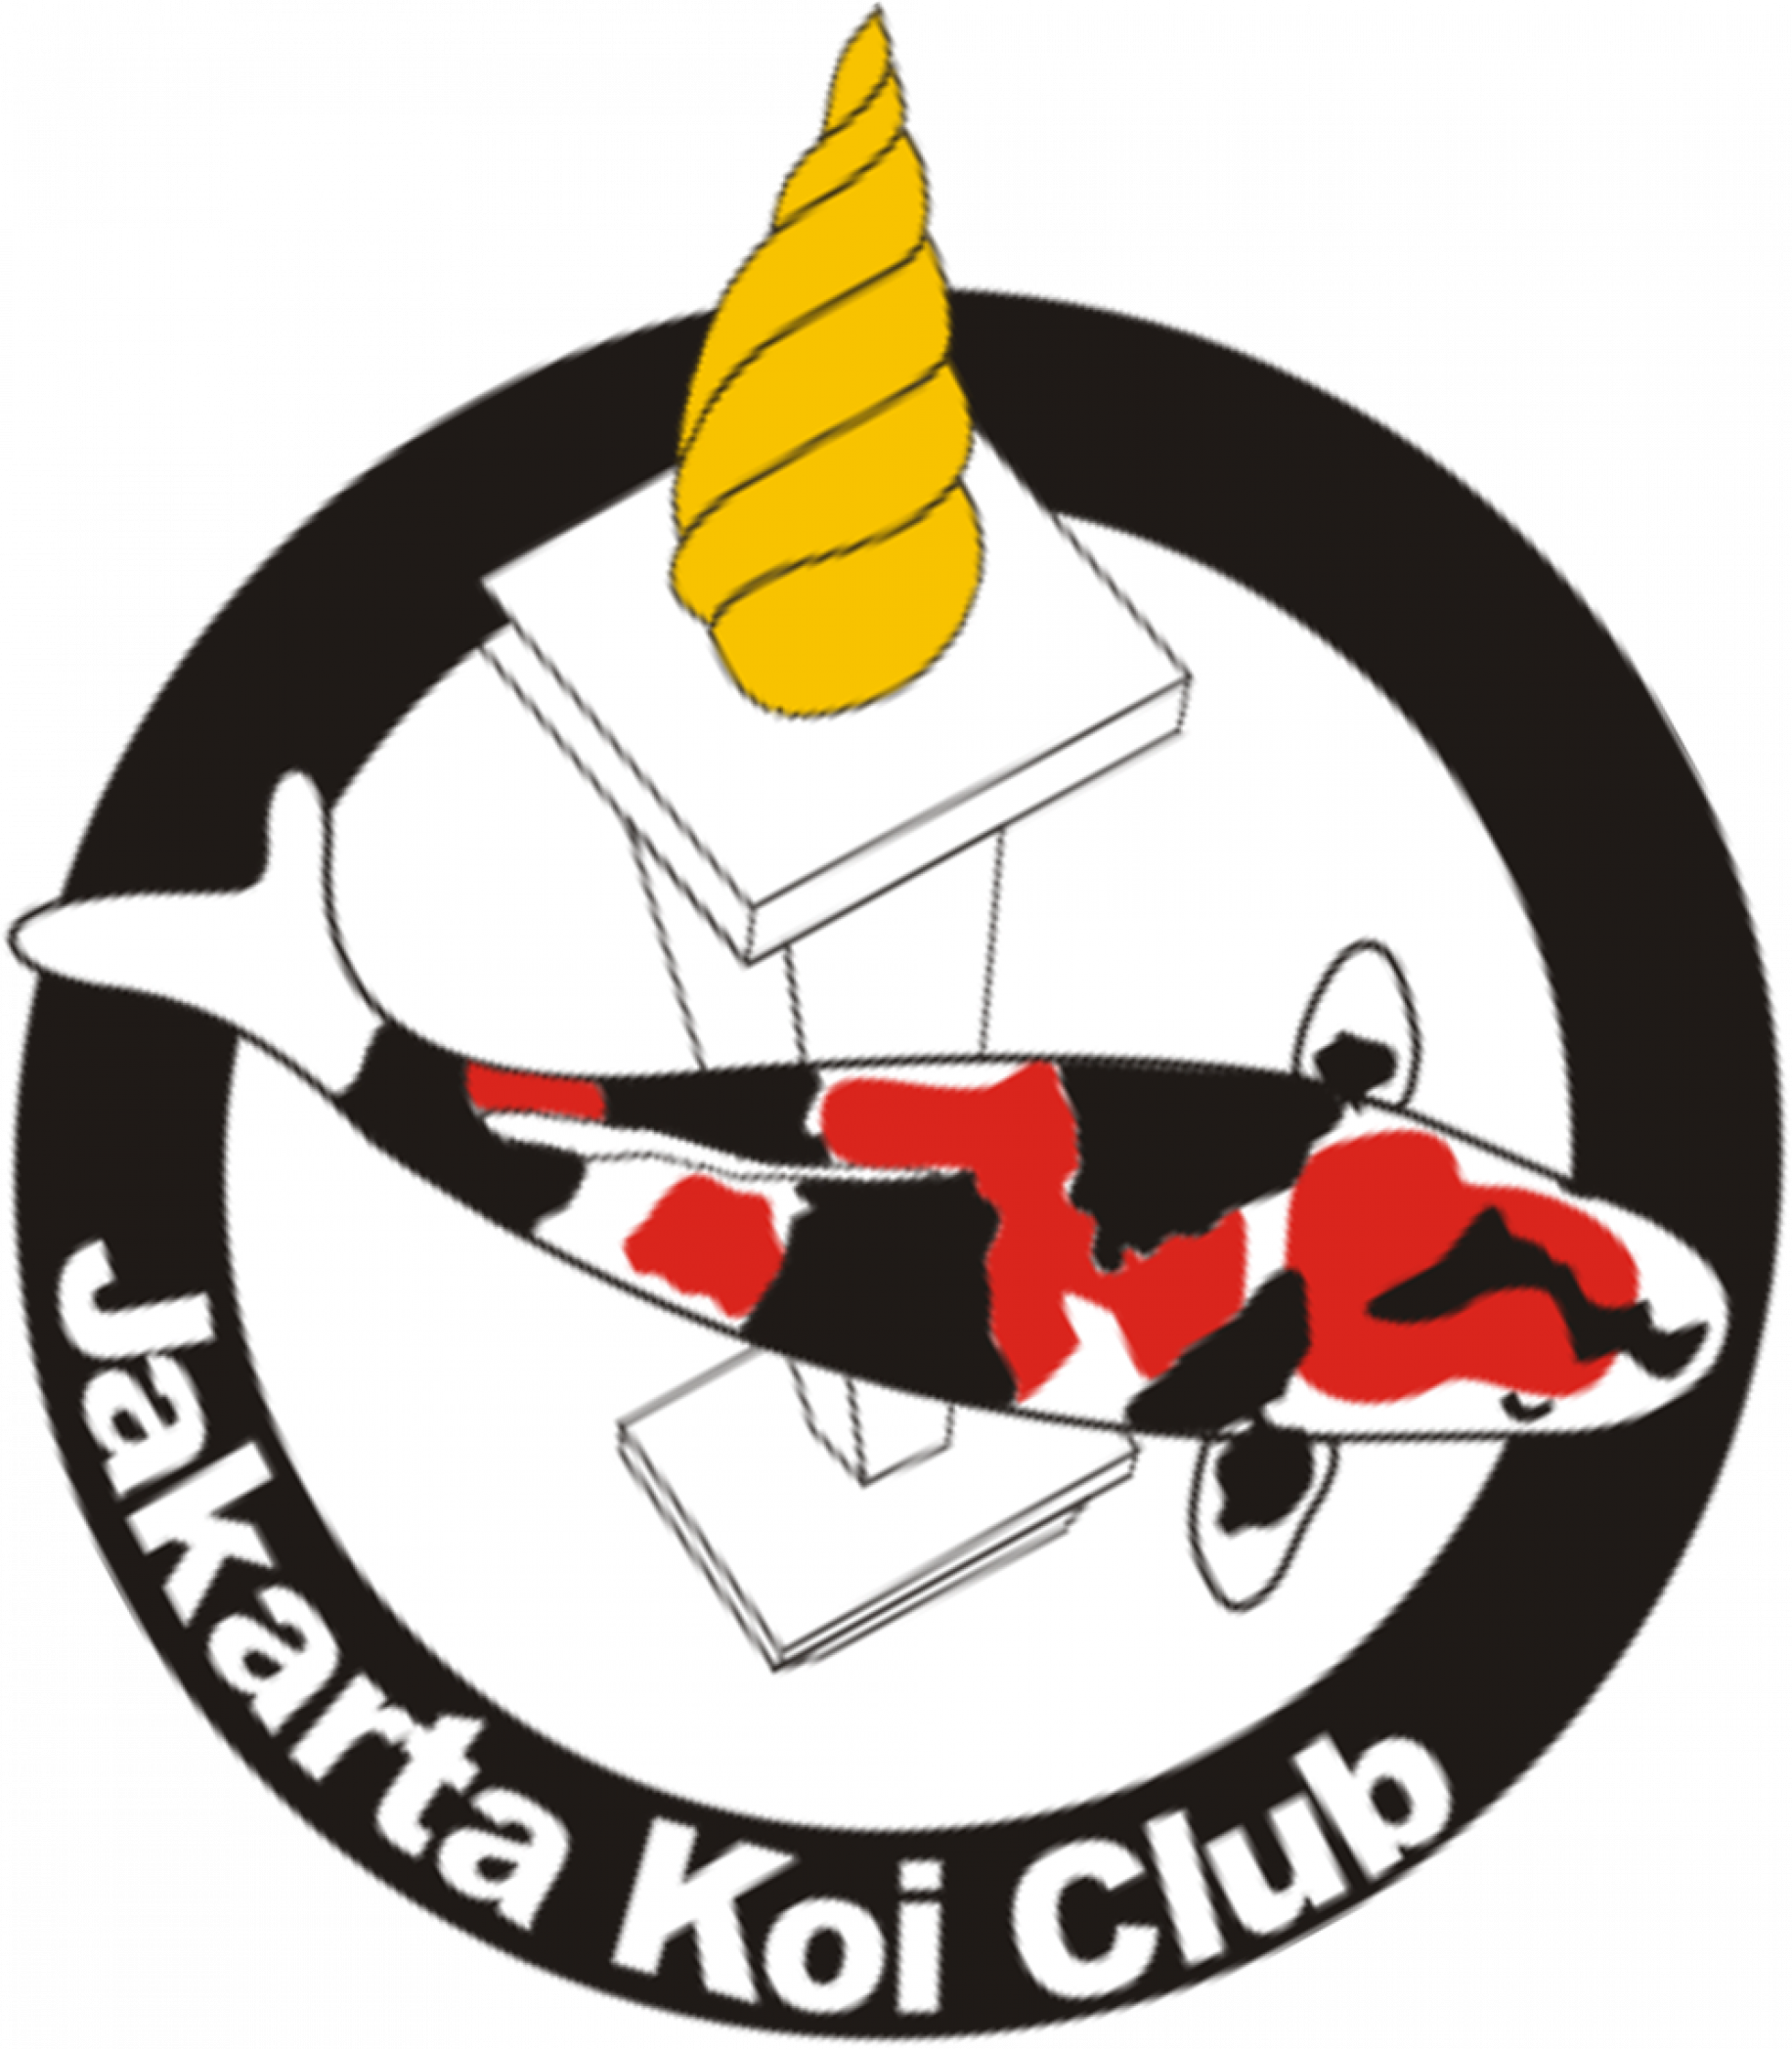 Jakarta Koi Club